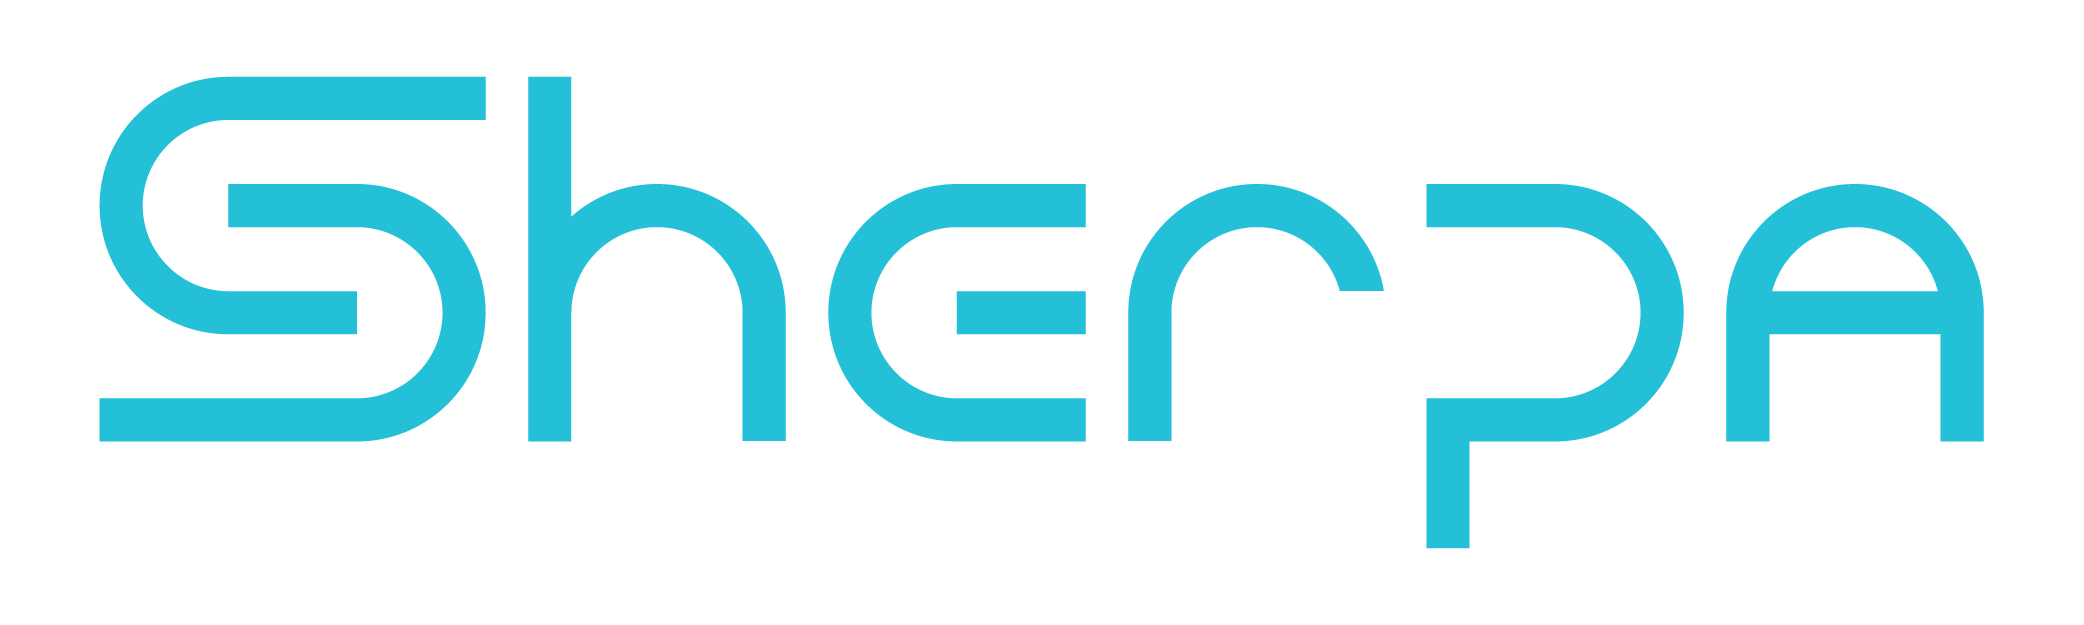 sherpa_logo